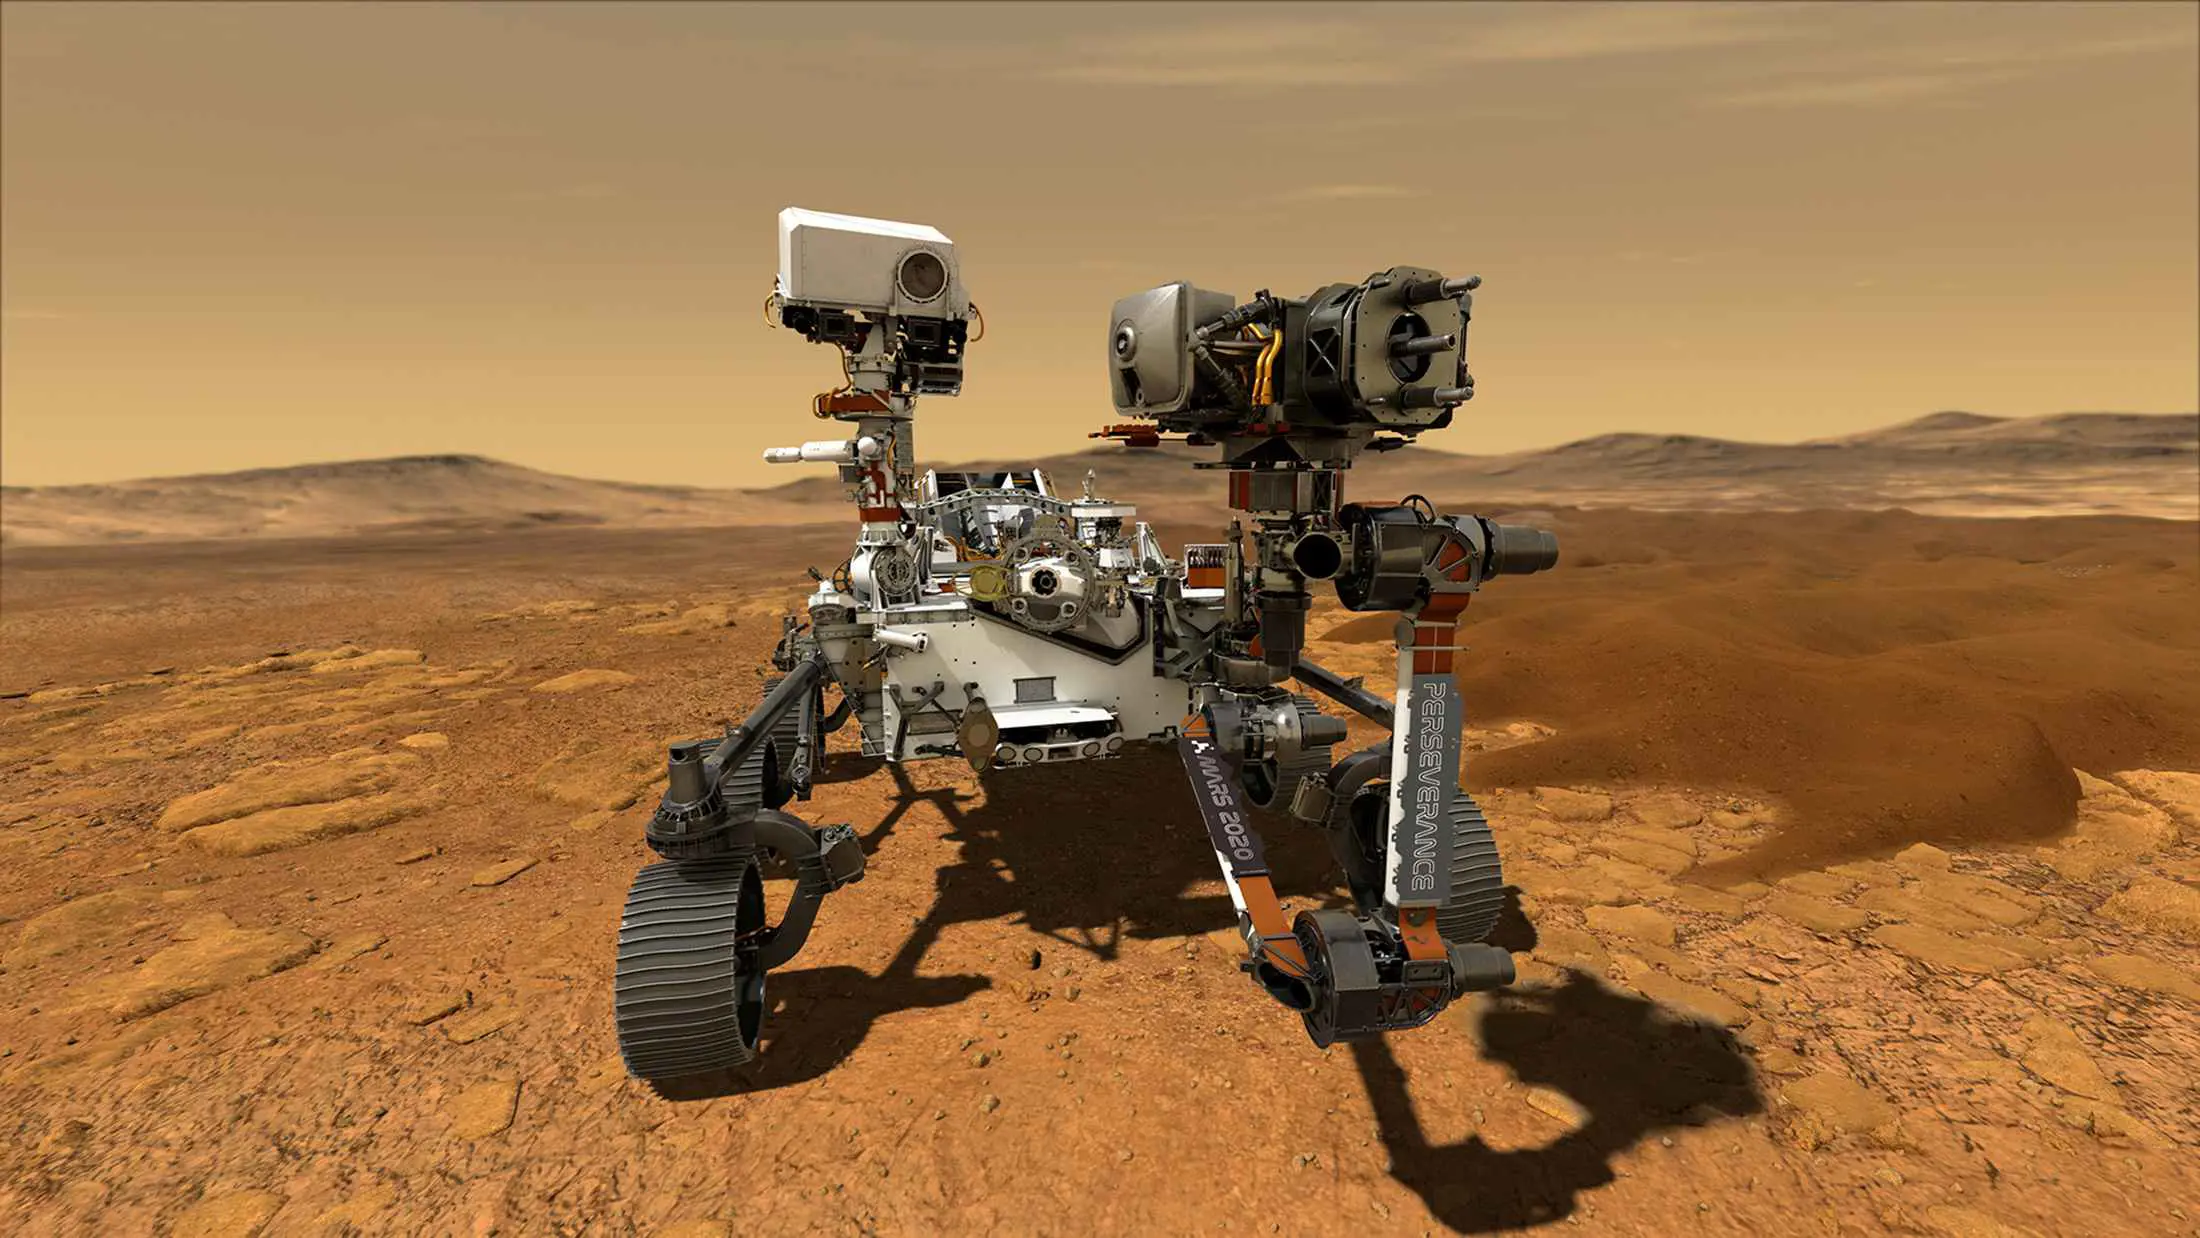 "ناسا" تستكشف "أدلة جرثومية" على سطح المريخ